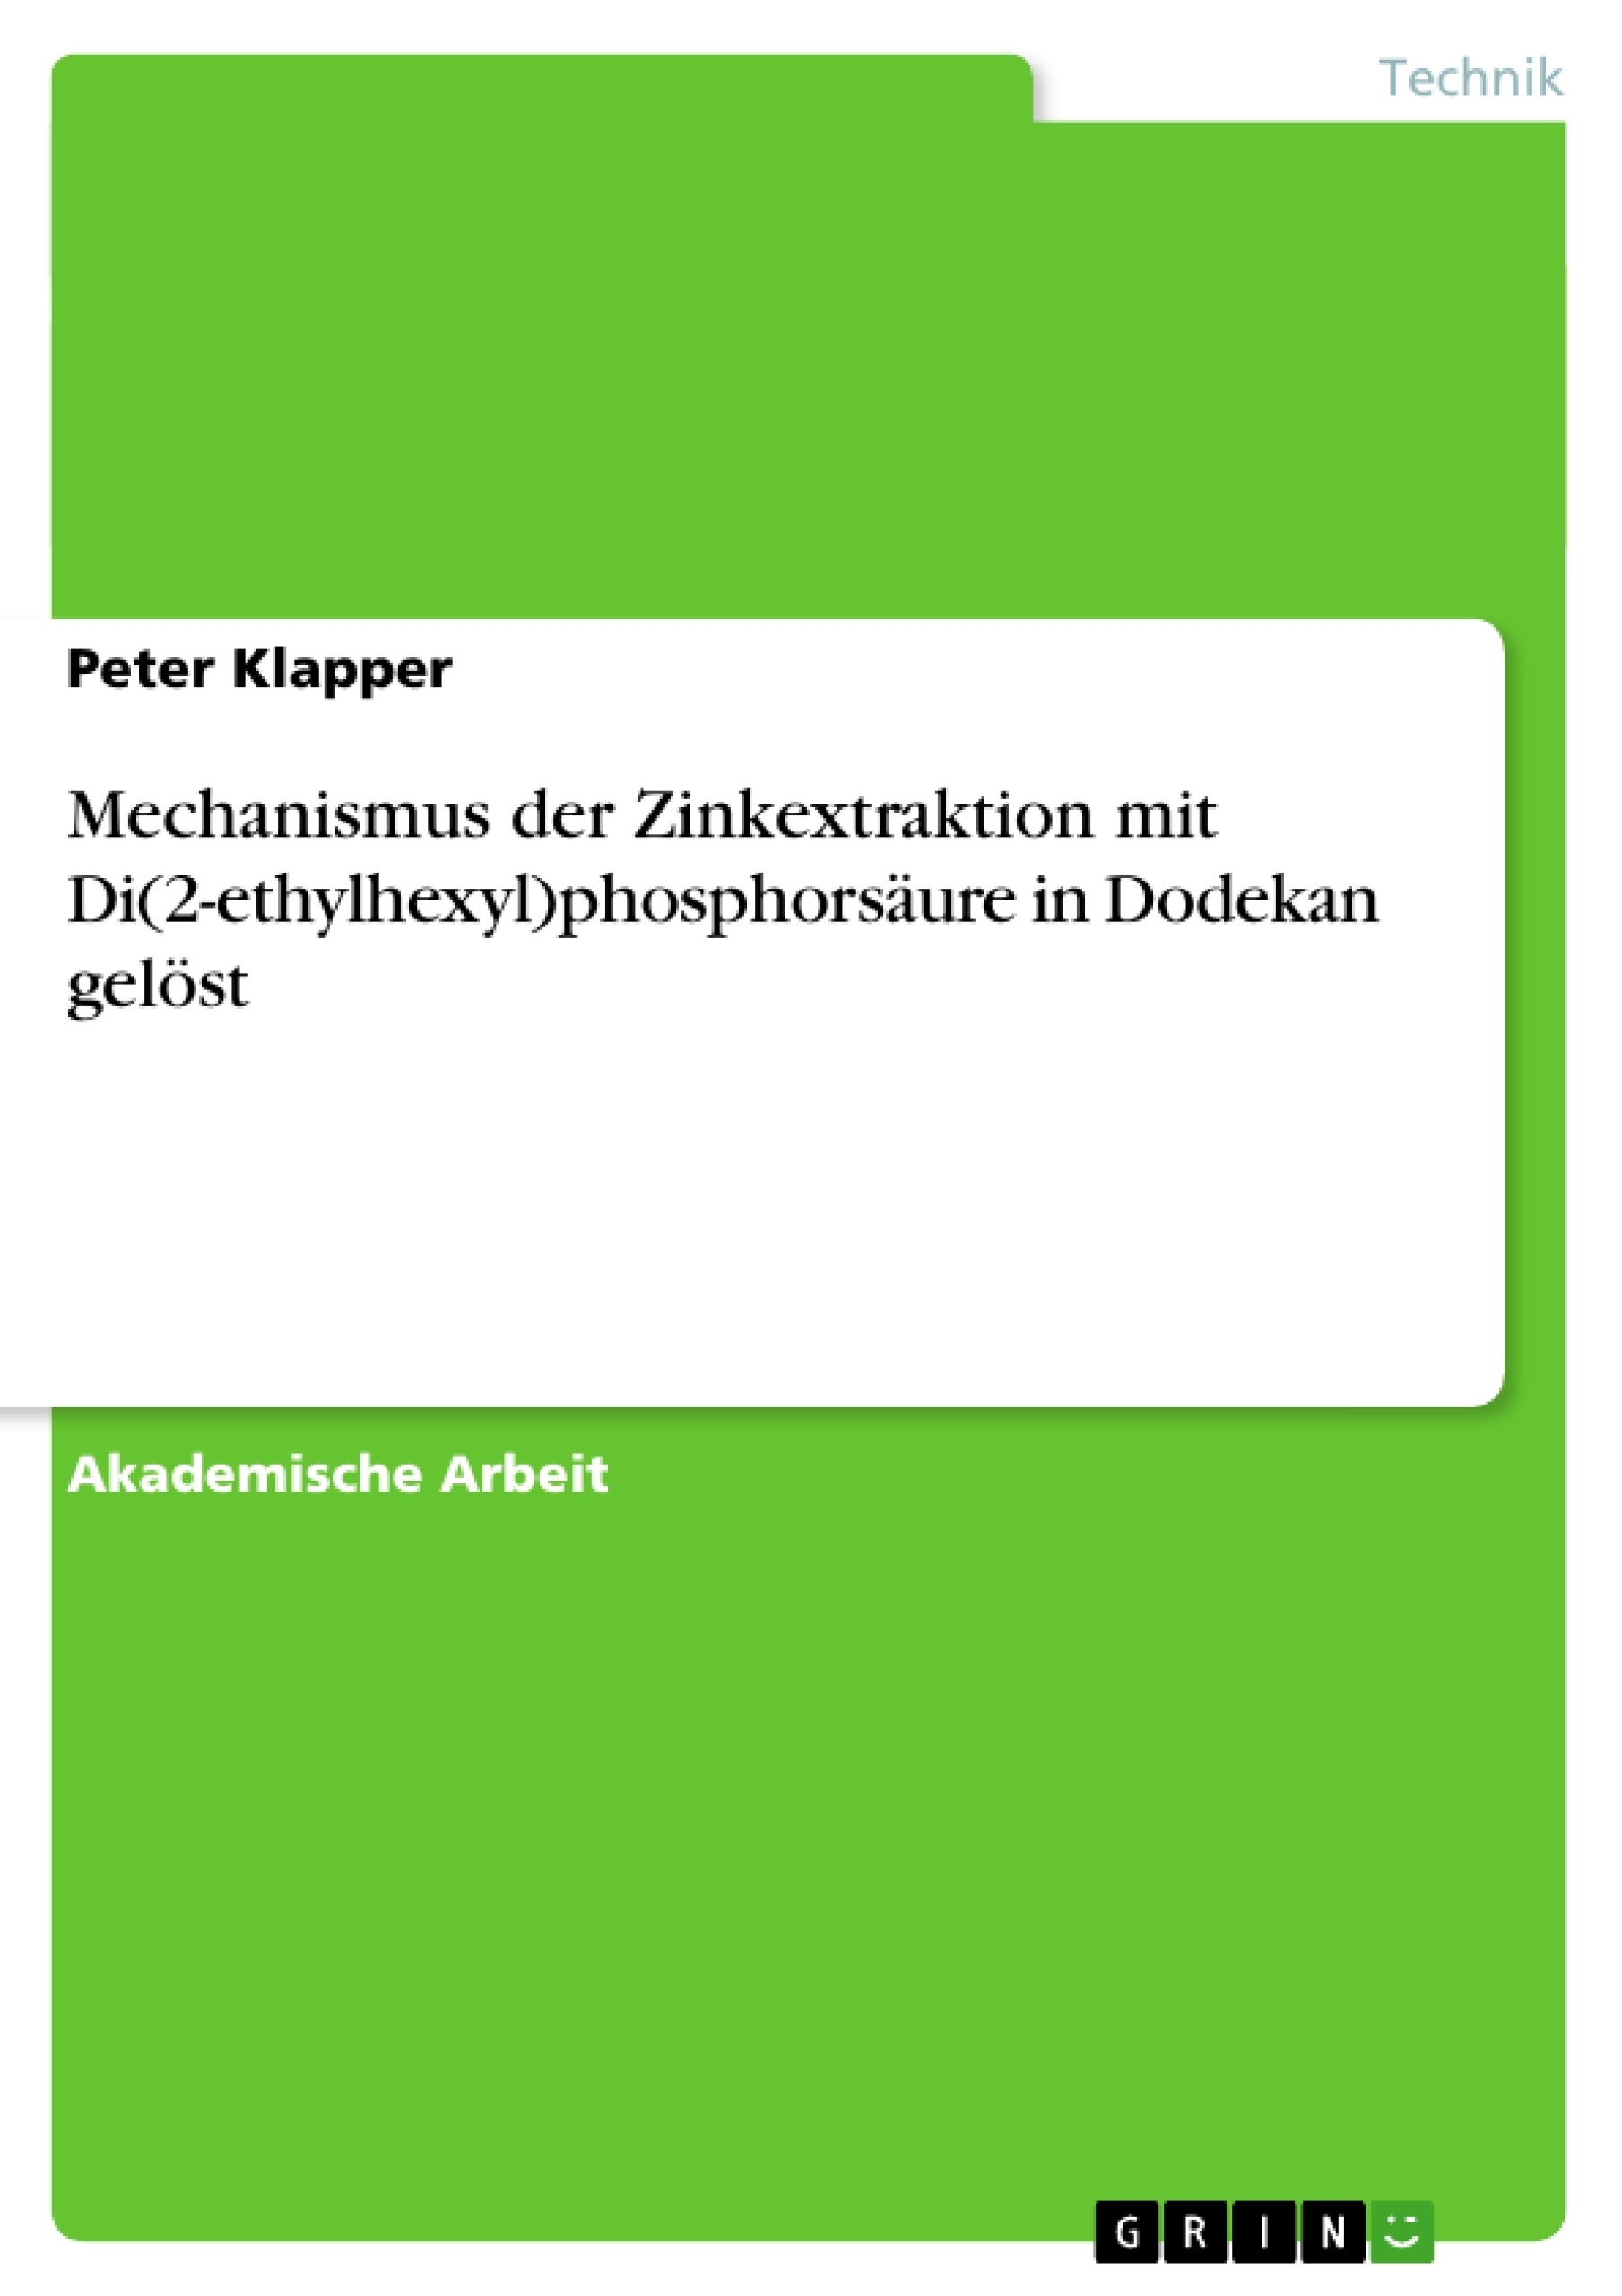 Titre: Mechanismus der Zinkextraktion mit Di(2-ethylhexyl)phosphorsäure in Dodekan gelöst